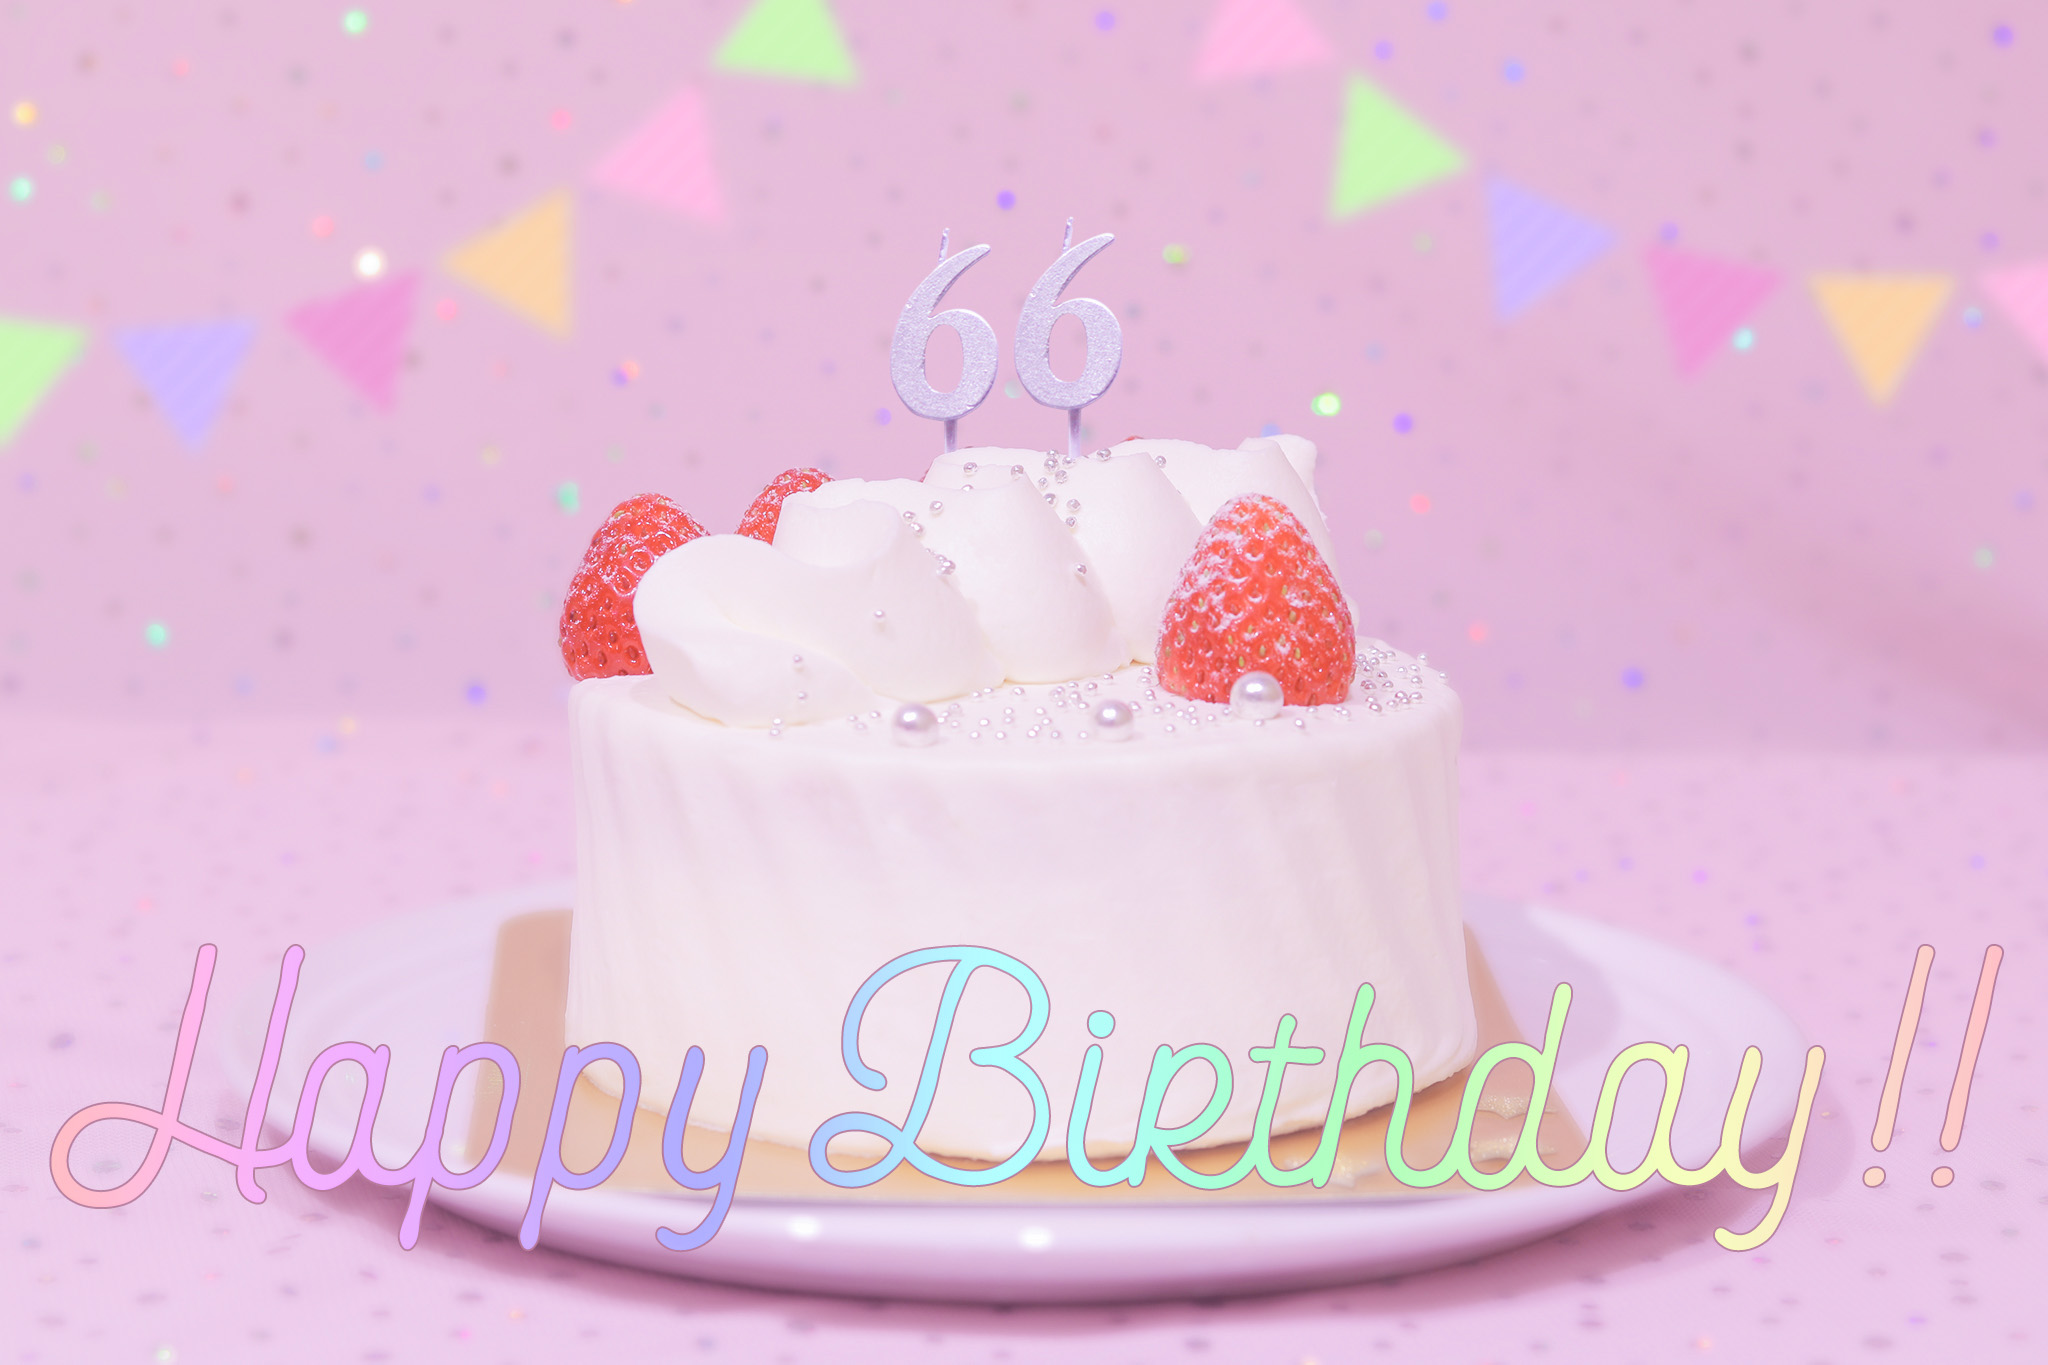 かわいい誕生日画像 ケーキとパステルカラーで可愛くお祝い 66歳編 のフリー画像 おしゃれなフリー写真素材 Girly Drop